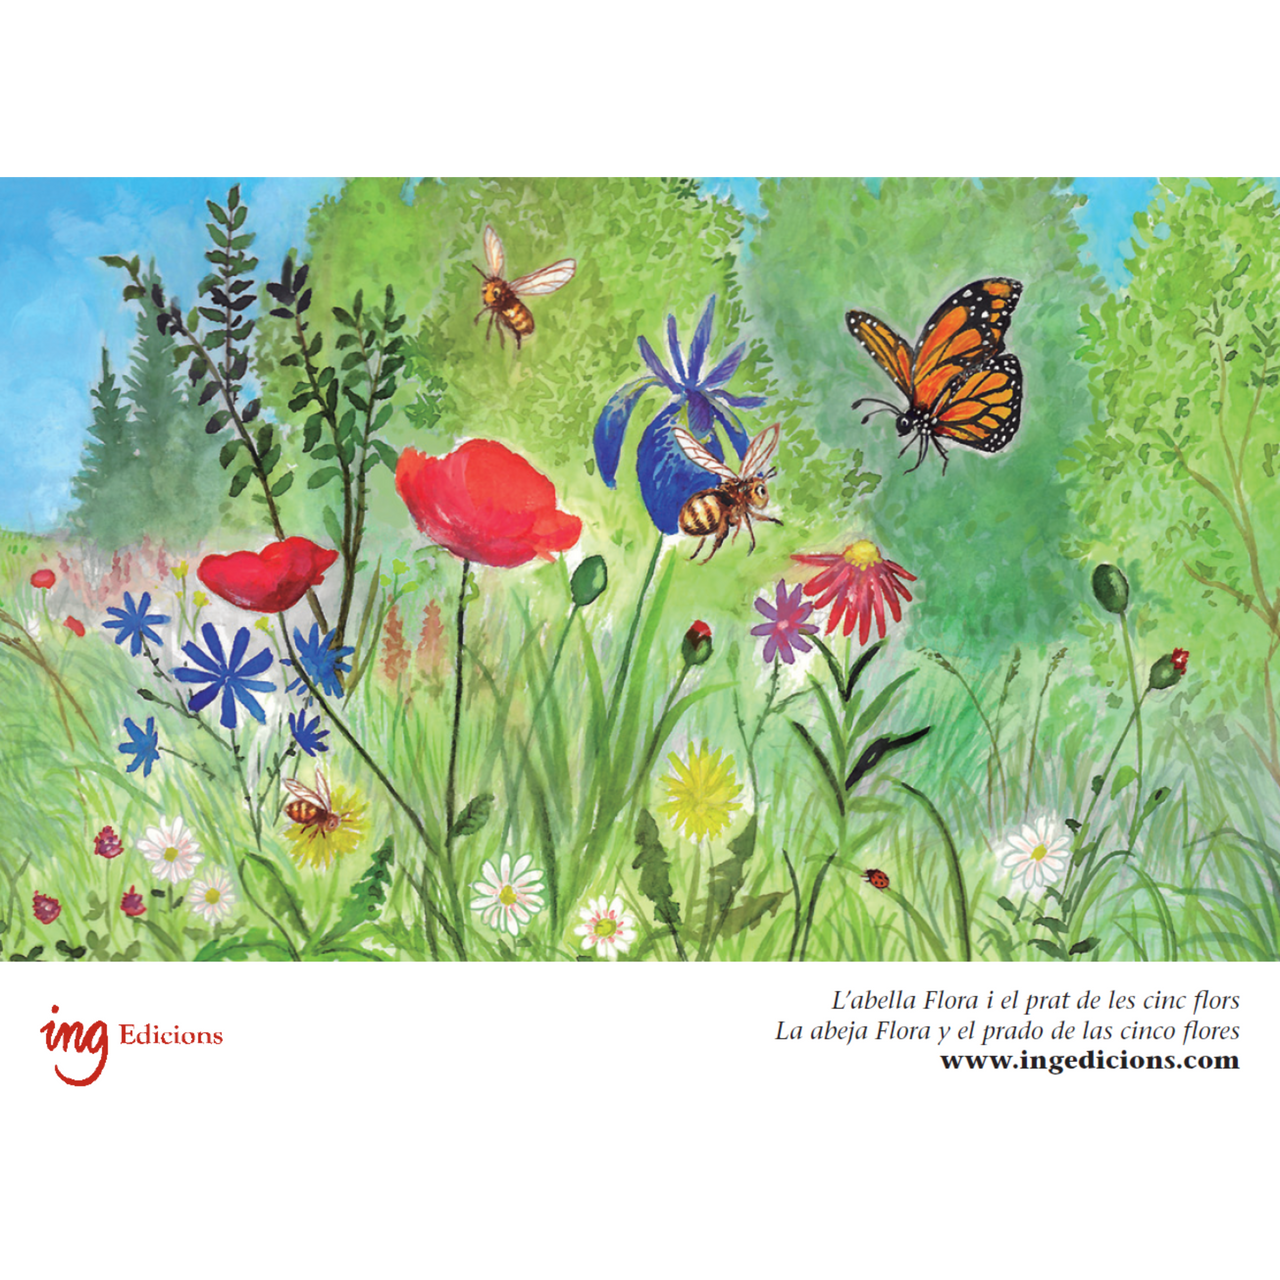 Postal "La abeja Flora y el prado de las cinco flores" (mariposa)